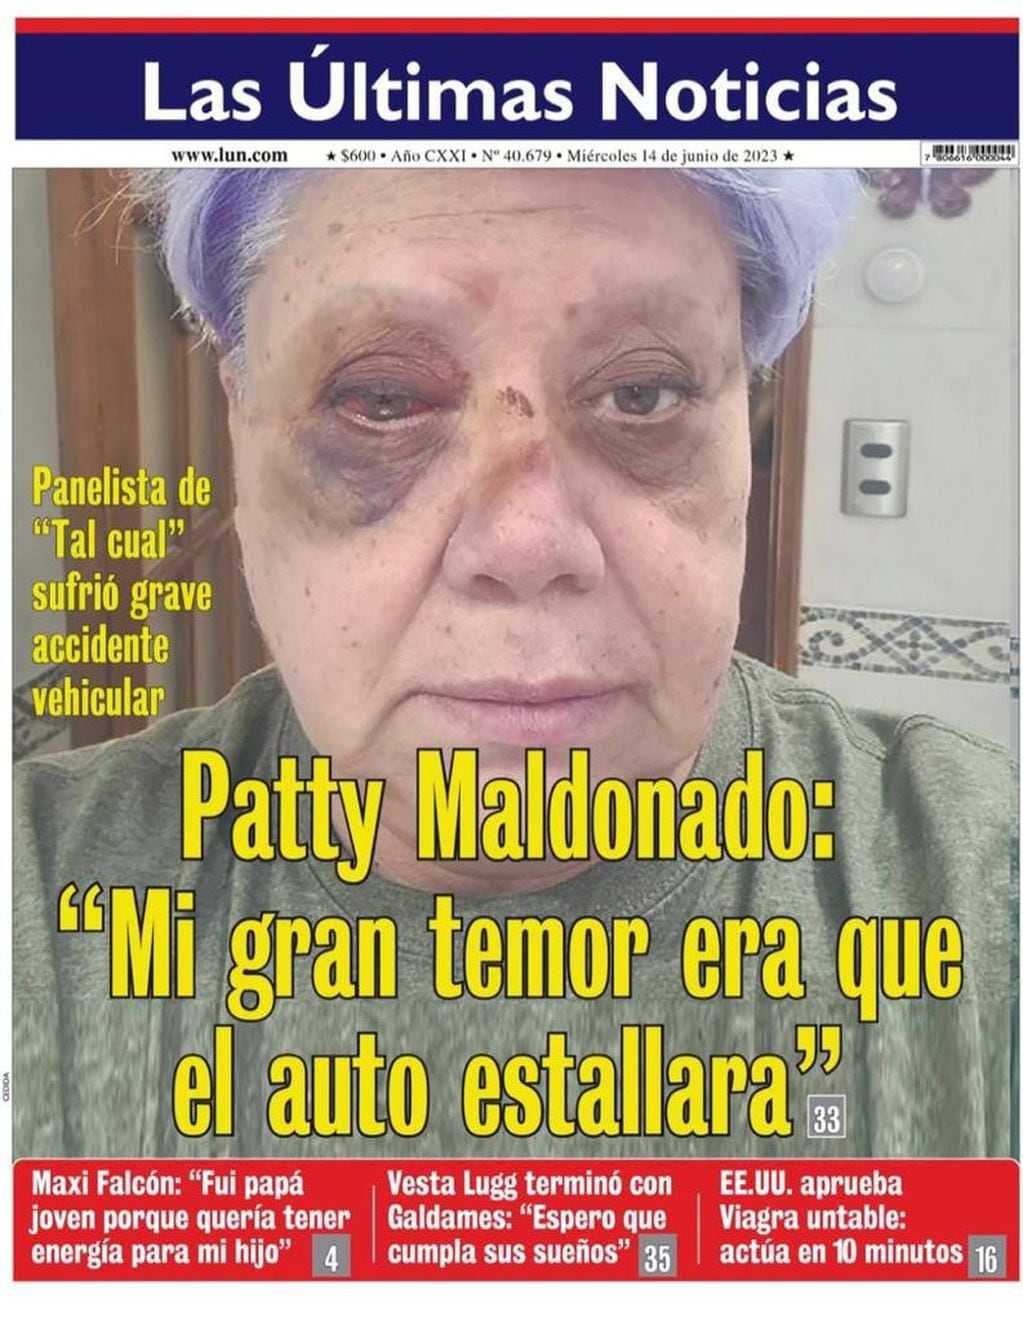 La foto de Paty Maldonado tras el accidente. (Portada de LUN)